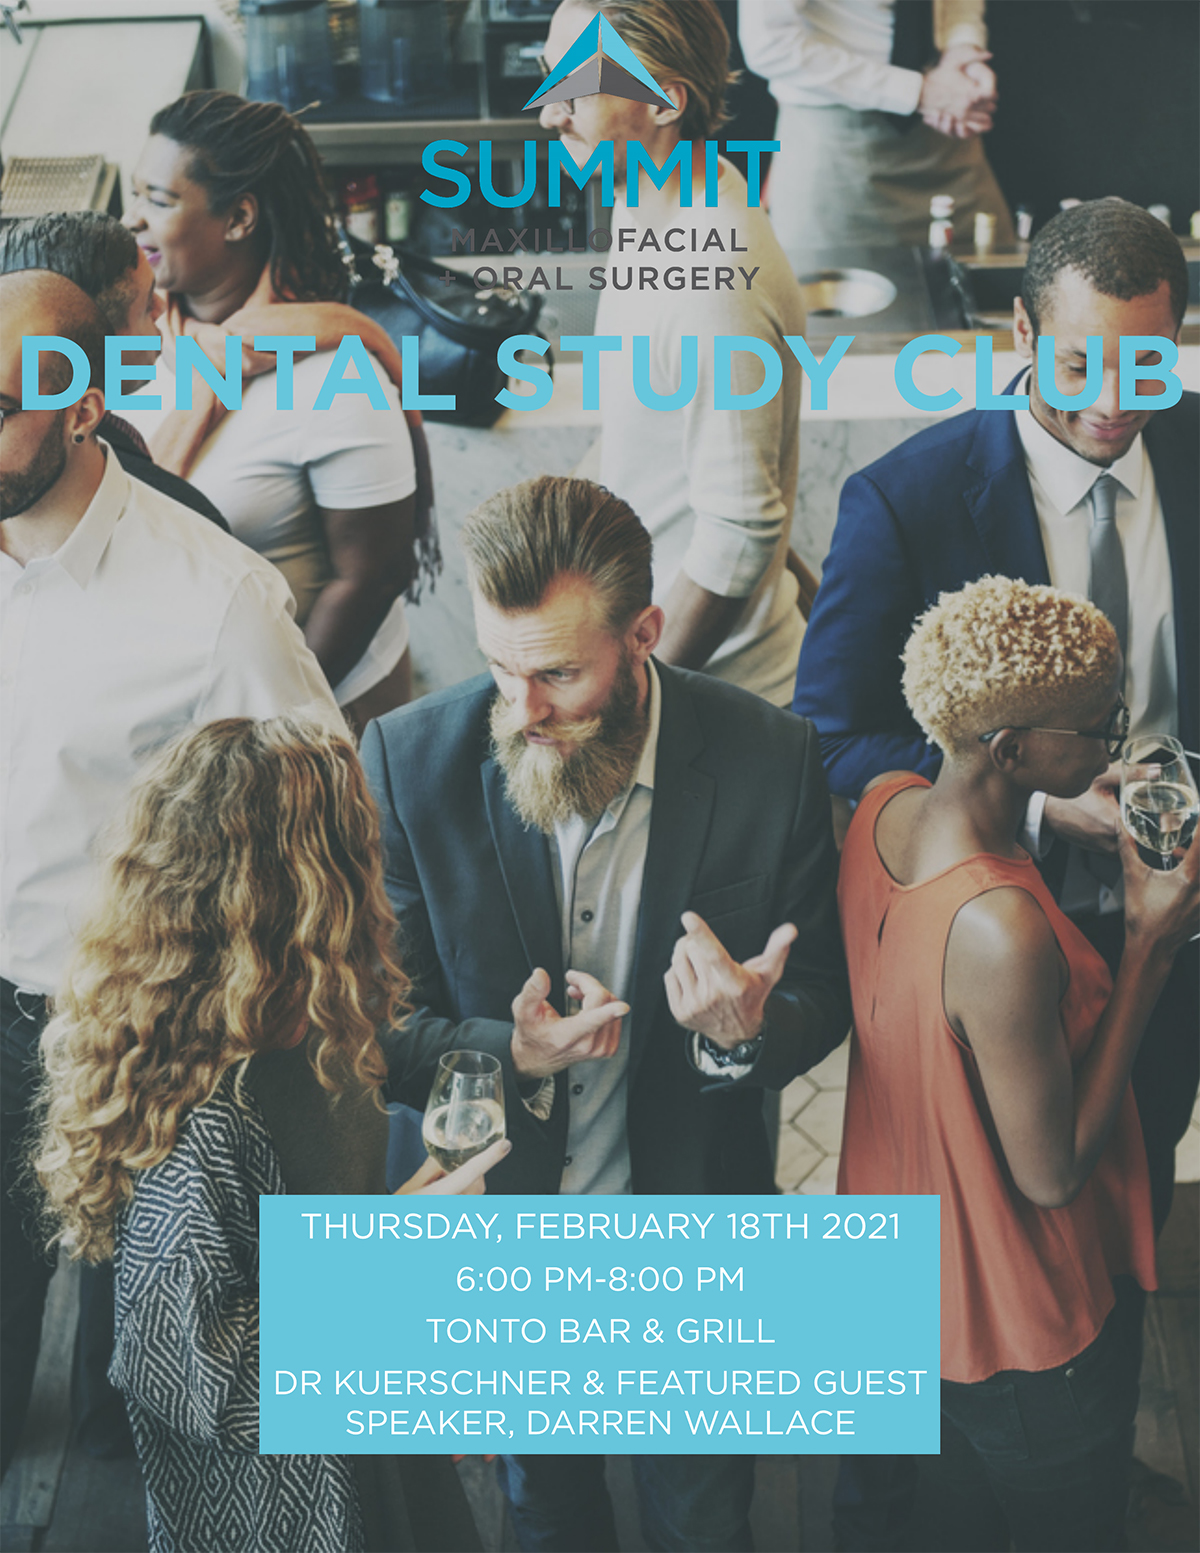 Dental Study Club February 18, 2021